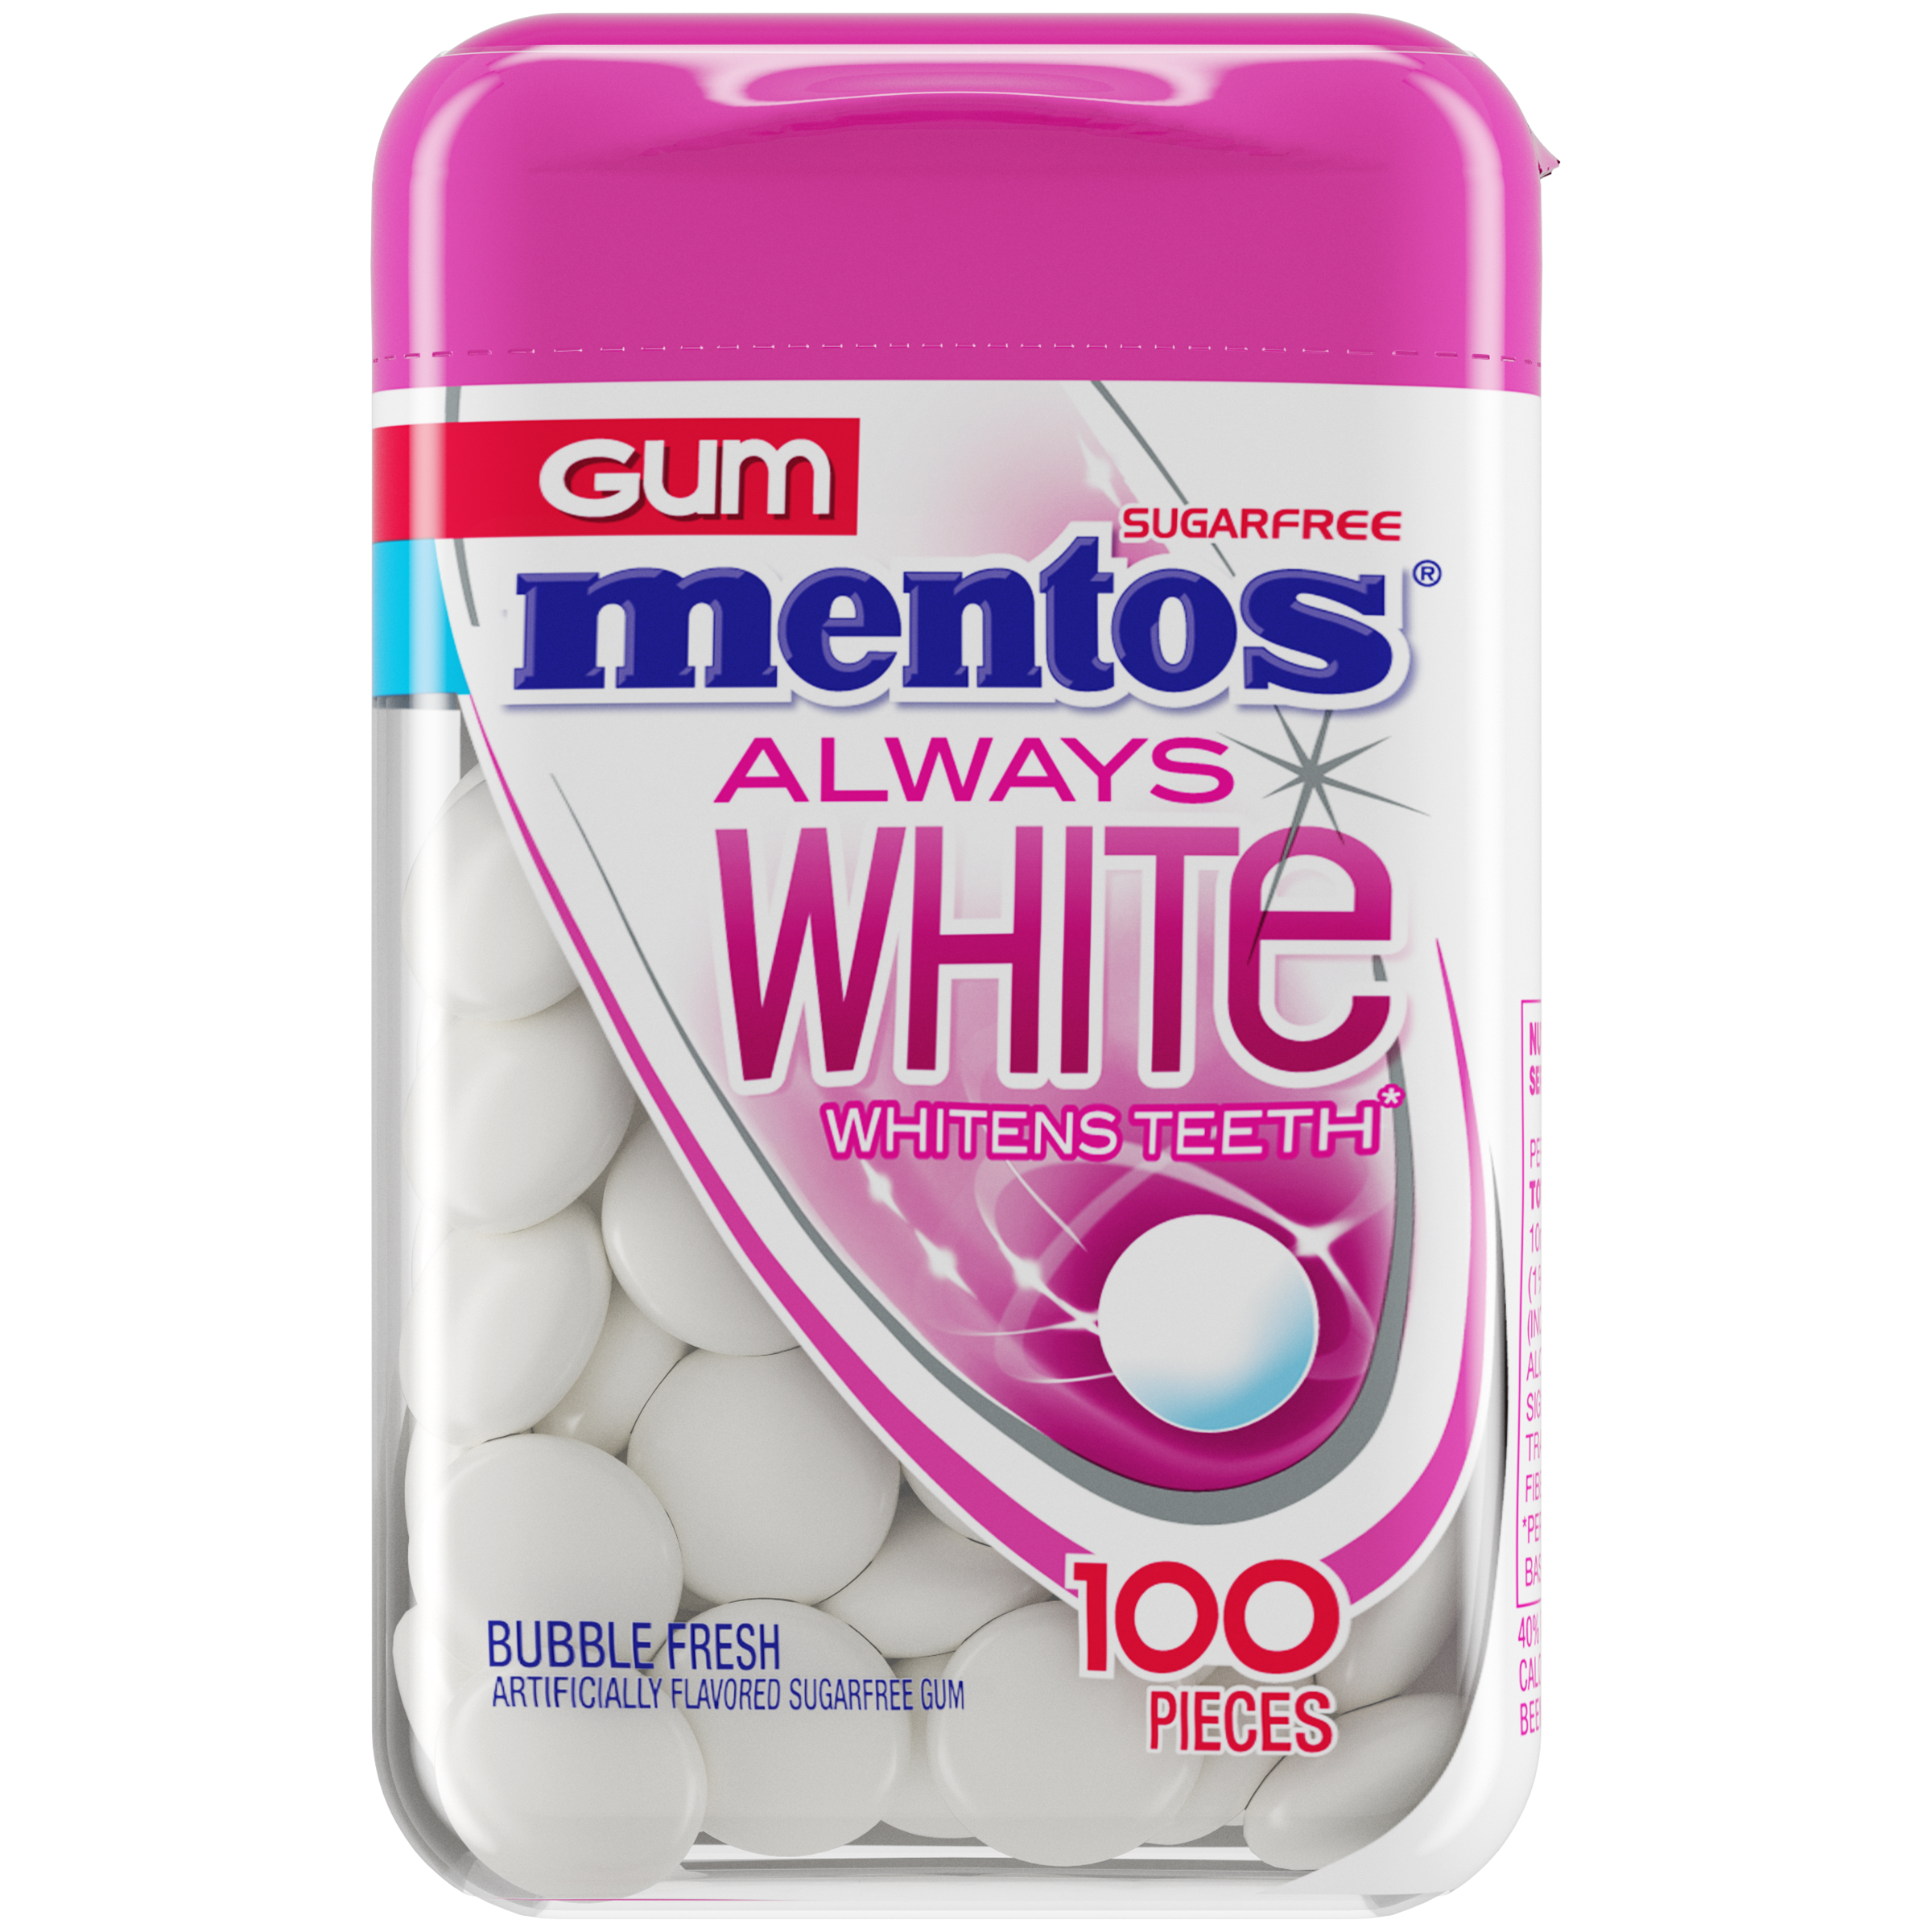 Mentos Gum with Vitamins, Sugar Free Chewing Gum India